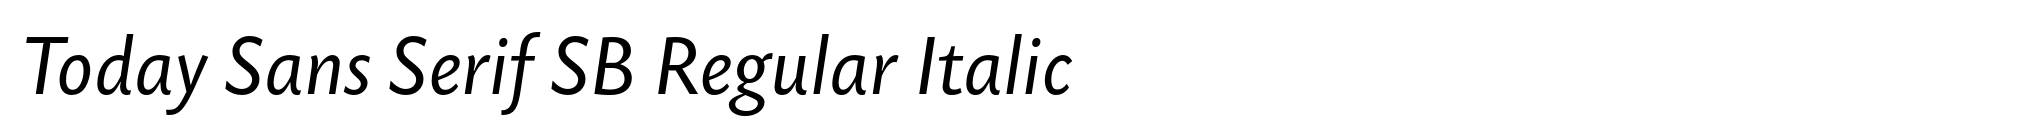 Today Sans Serif SB Regular Italic image